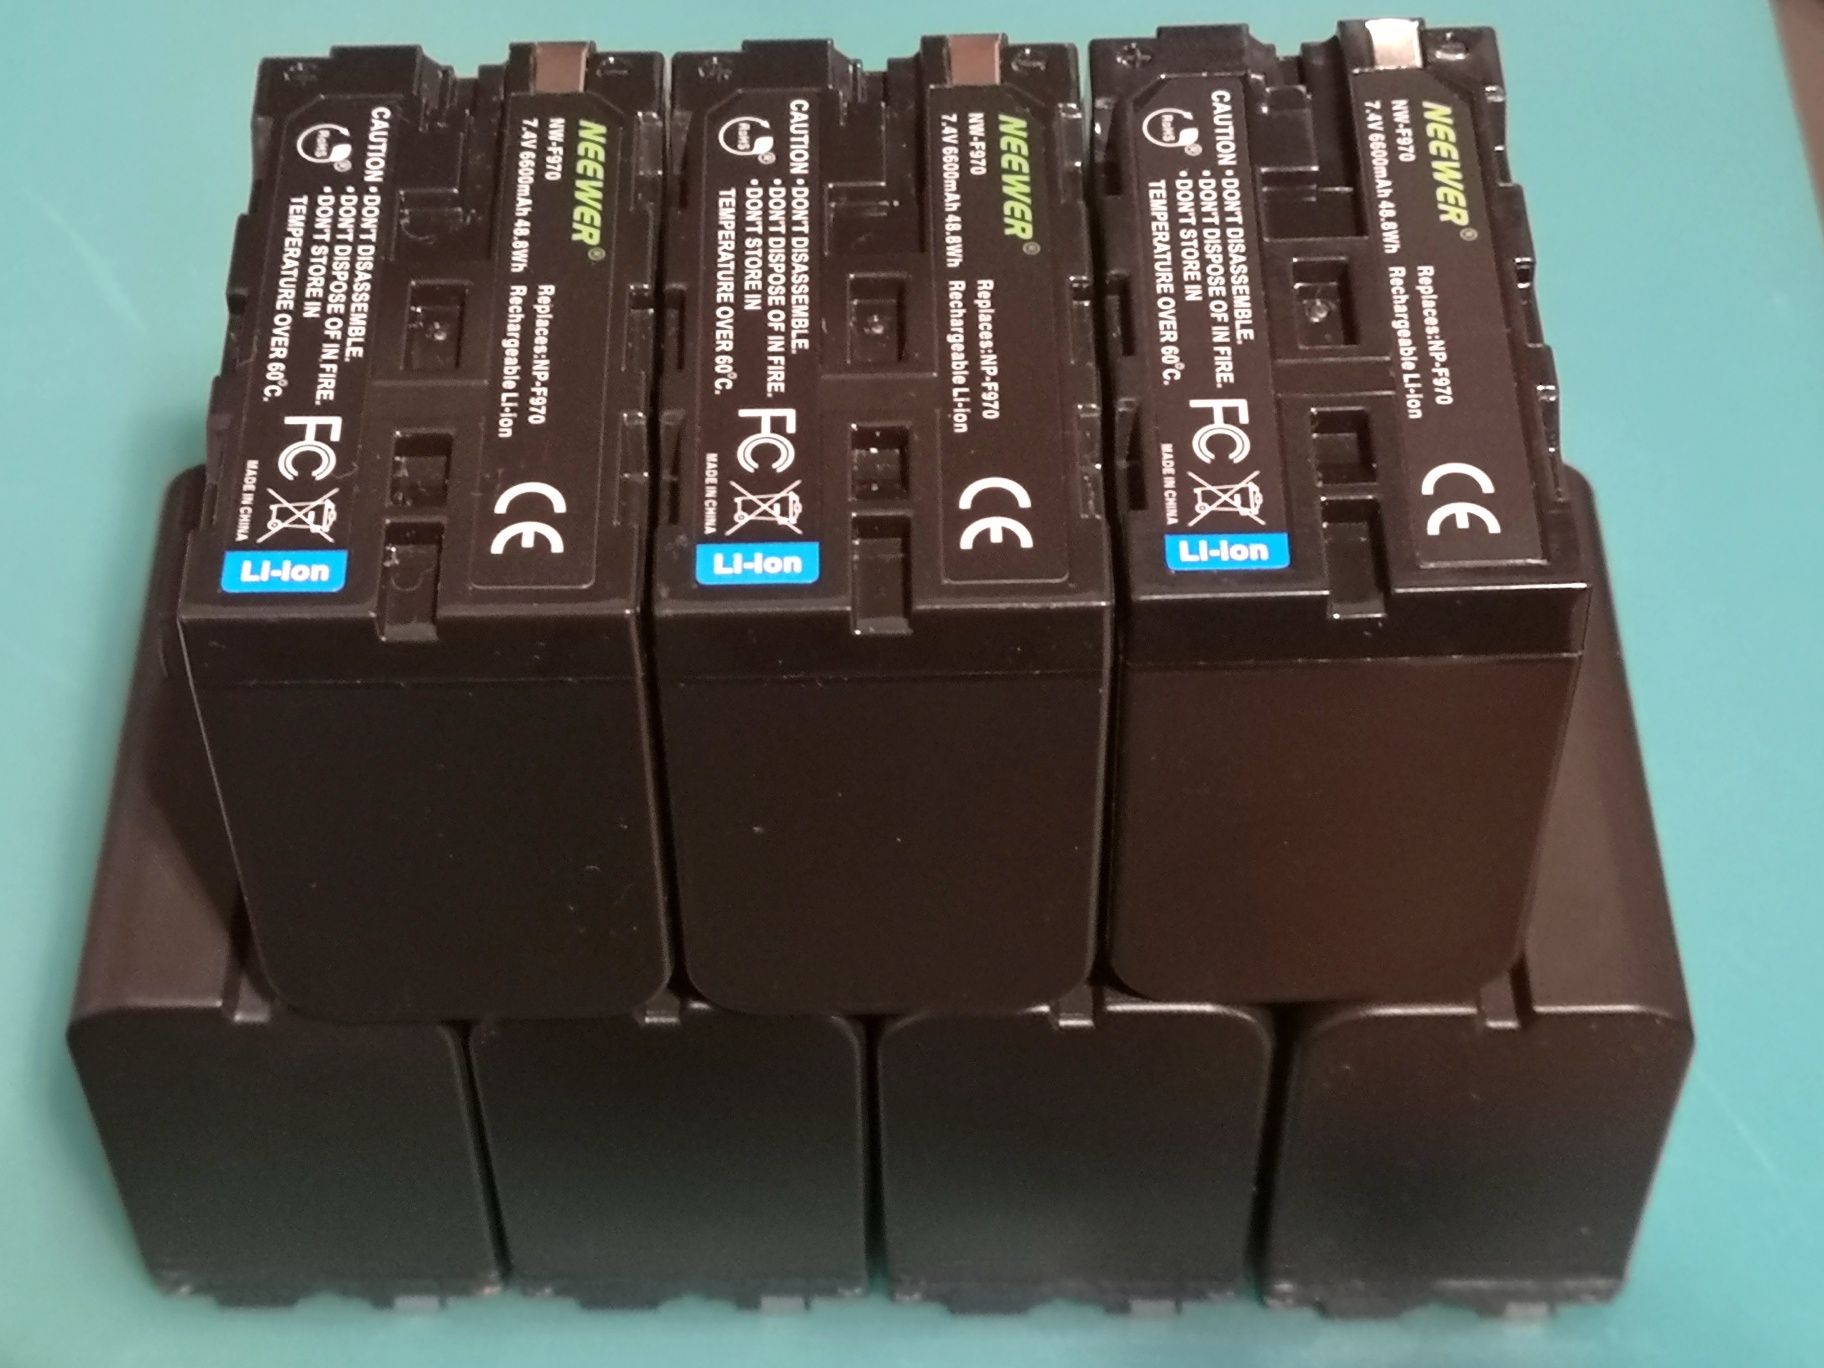 Bateria carregador Sony Np-F970 NPF970 npf970 fotografia vídeo led LED